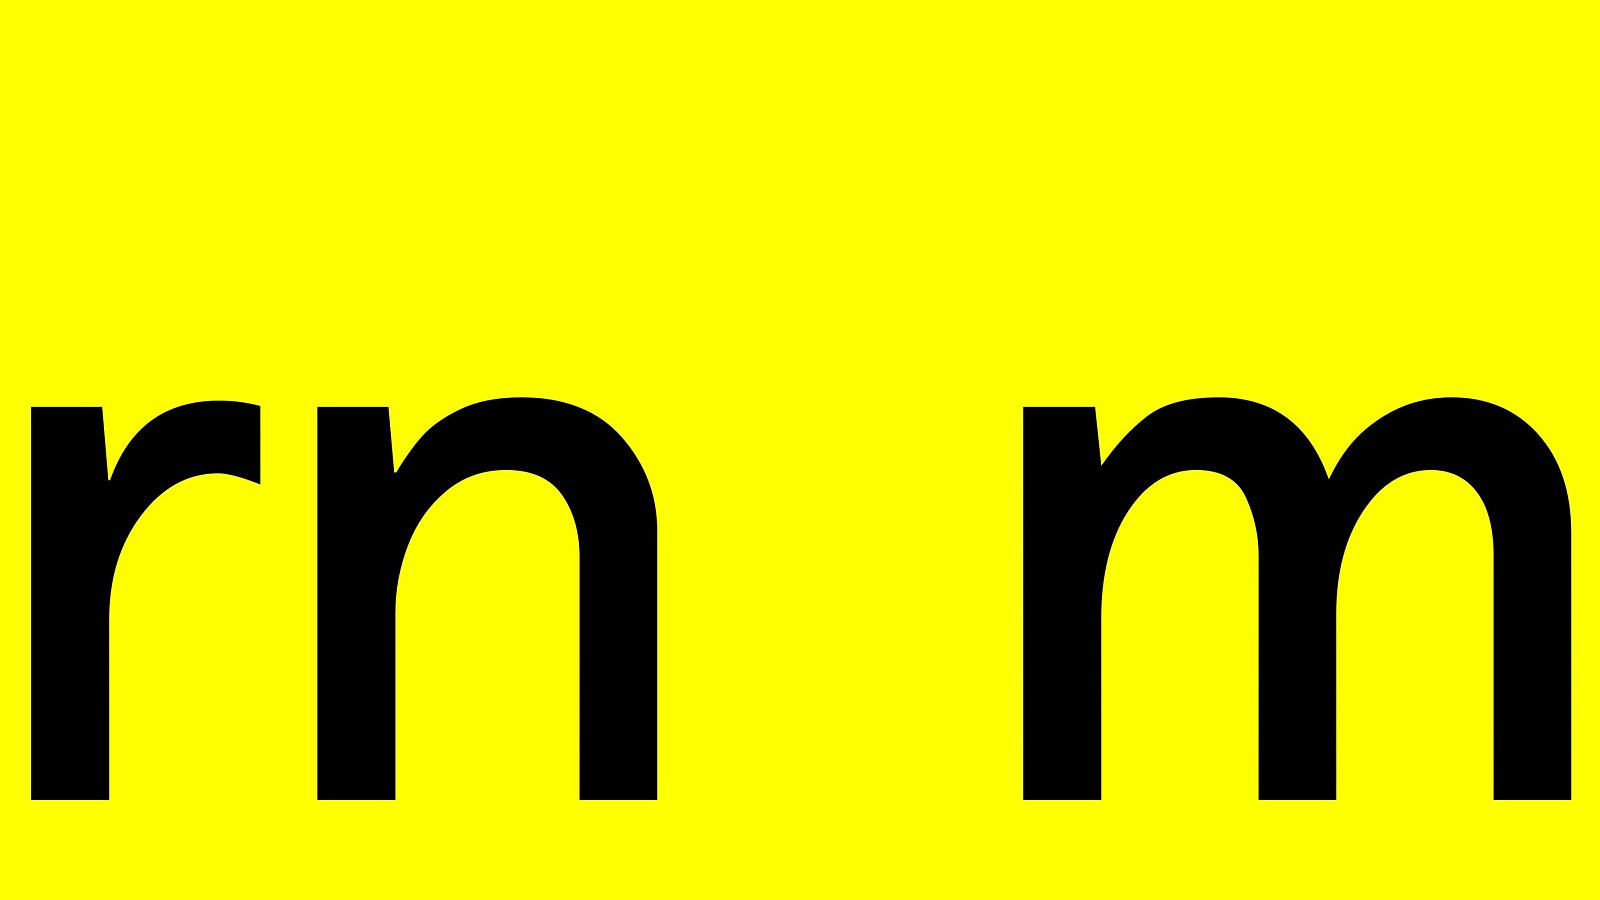 ejemplo de la técnica "interletraje" que consiste en agrupar dos letras para producir el efecto visual de otra